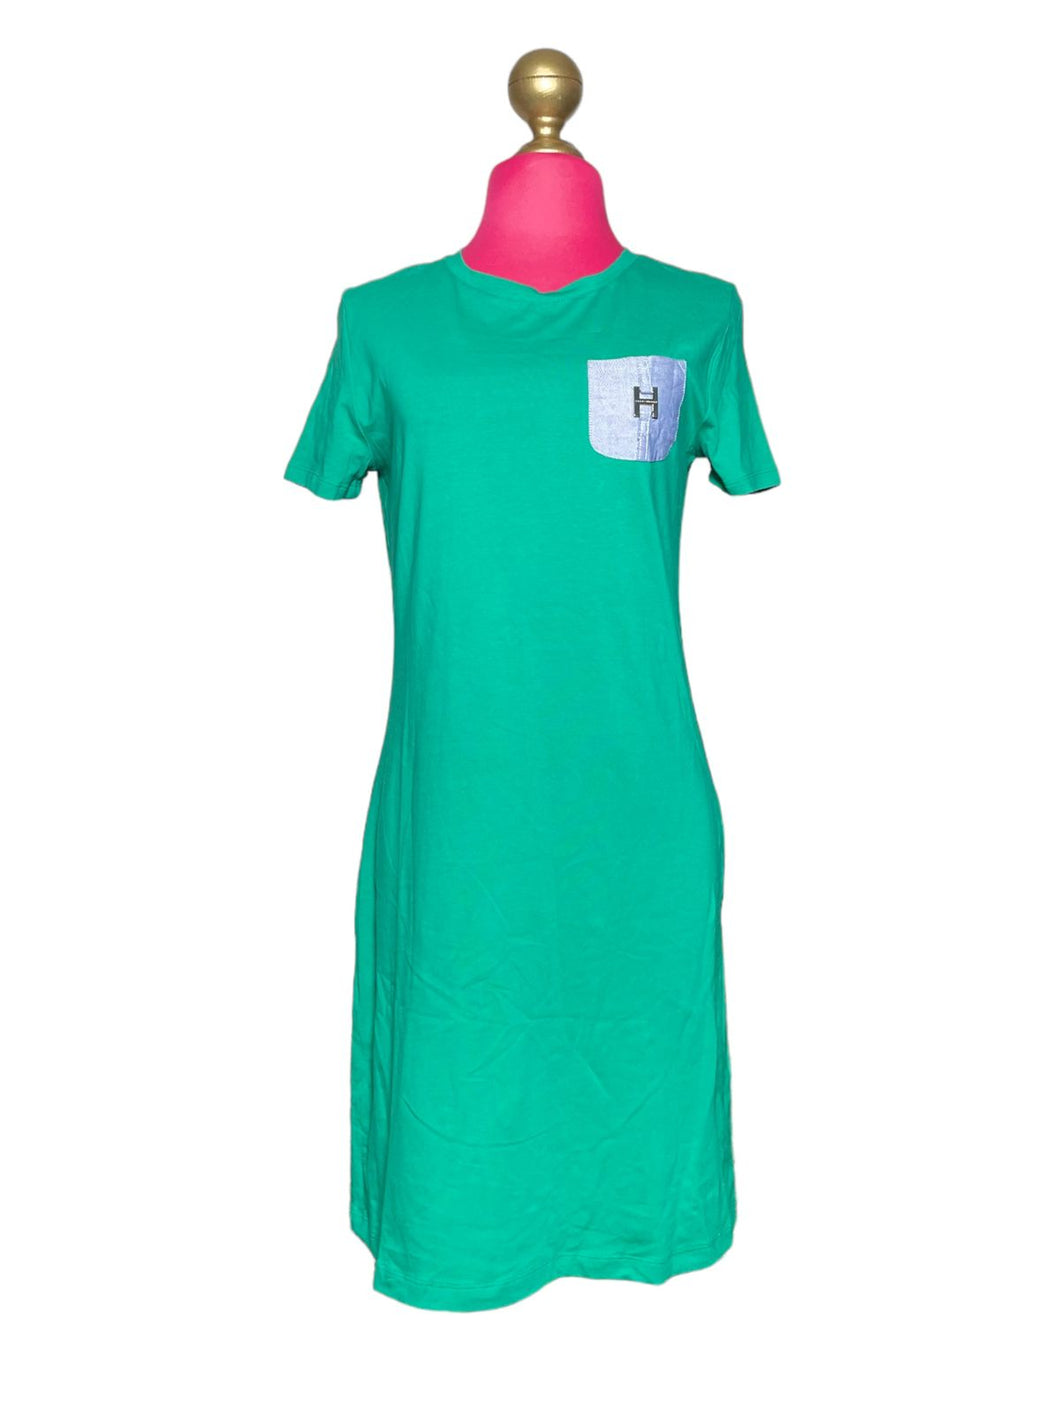 Estilo Clásico en Vestido color verde, marca Tommy Hilfiger, Talla M